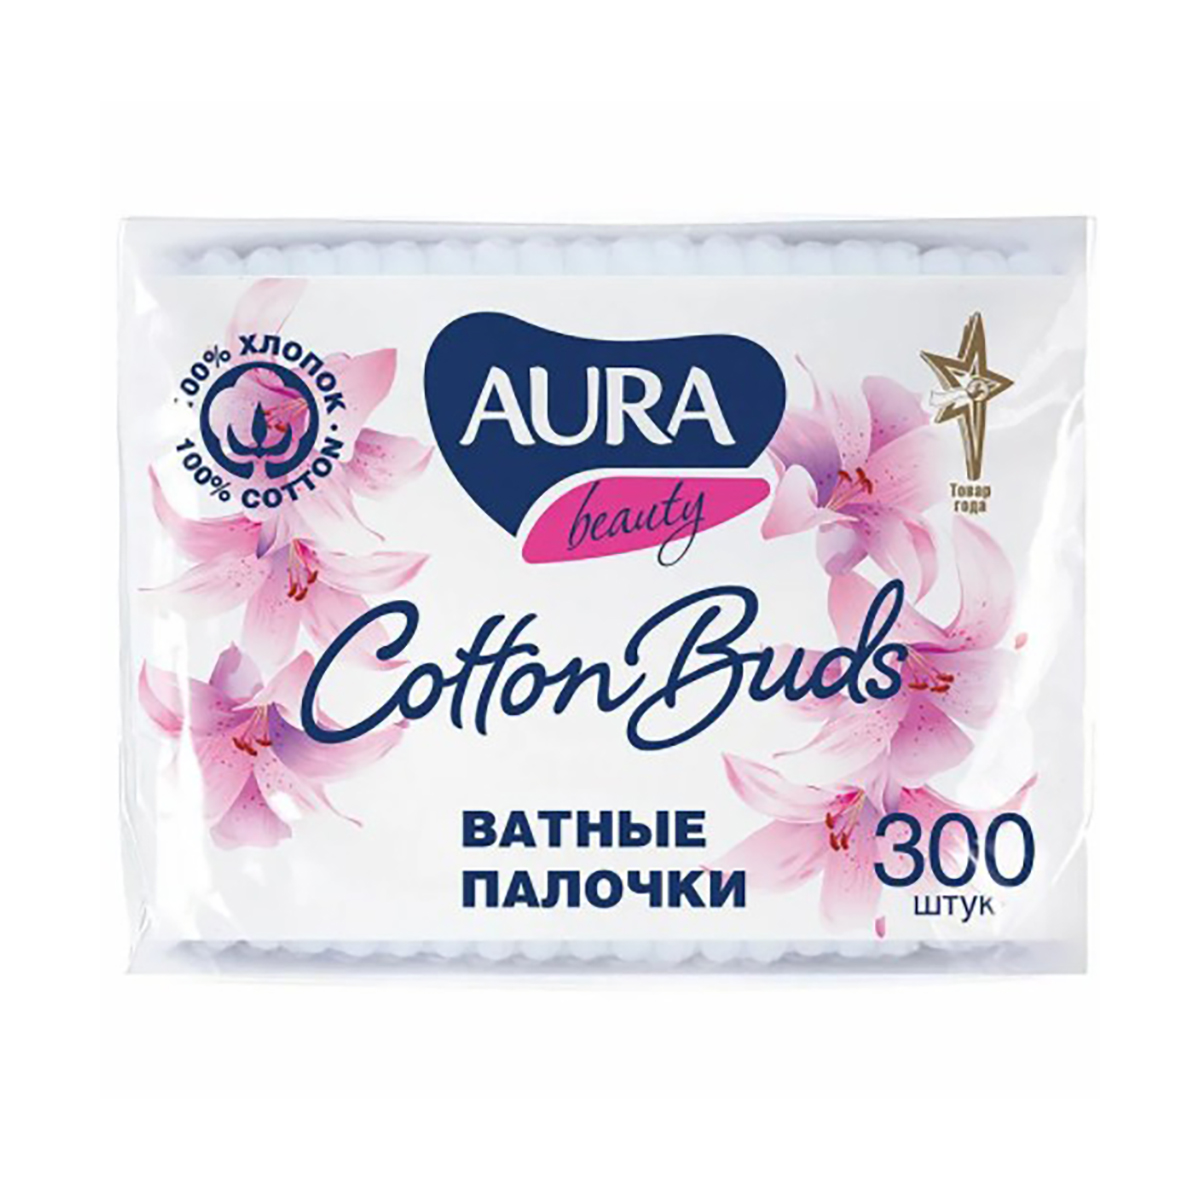 Ватные палочки "aura" упак. 300 шт. (пакет) (36)